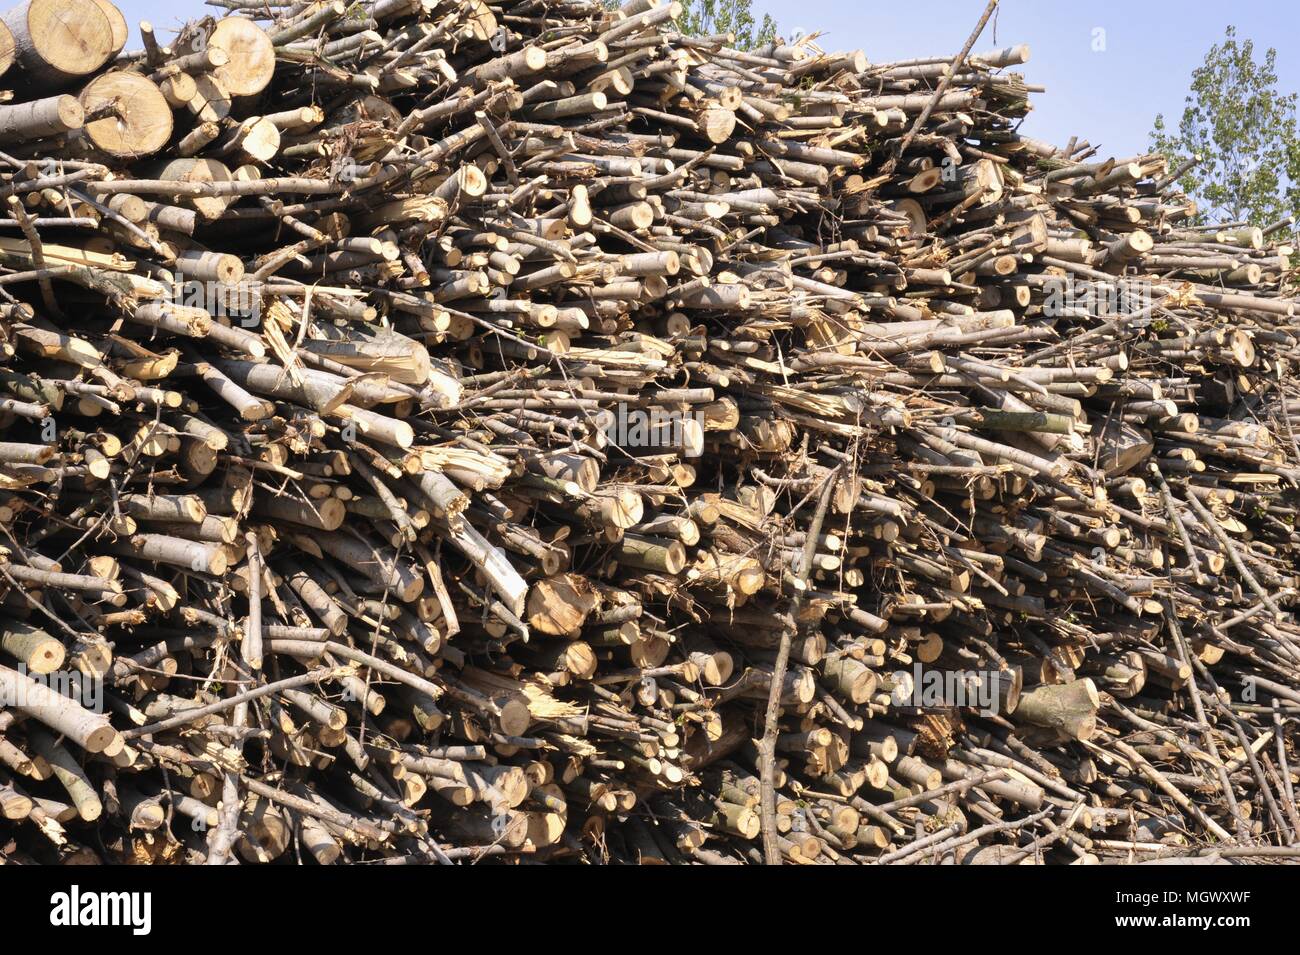 Planta para la explotación de la biomasa (residuos de madera) para producir electricidad, agua caliente para calefacción y pellets (combustible ecológico), de Abbiategrasso, Milan, Italia. Foto de stock